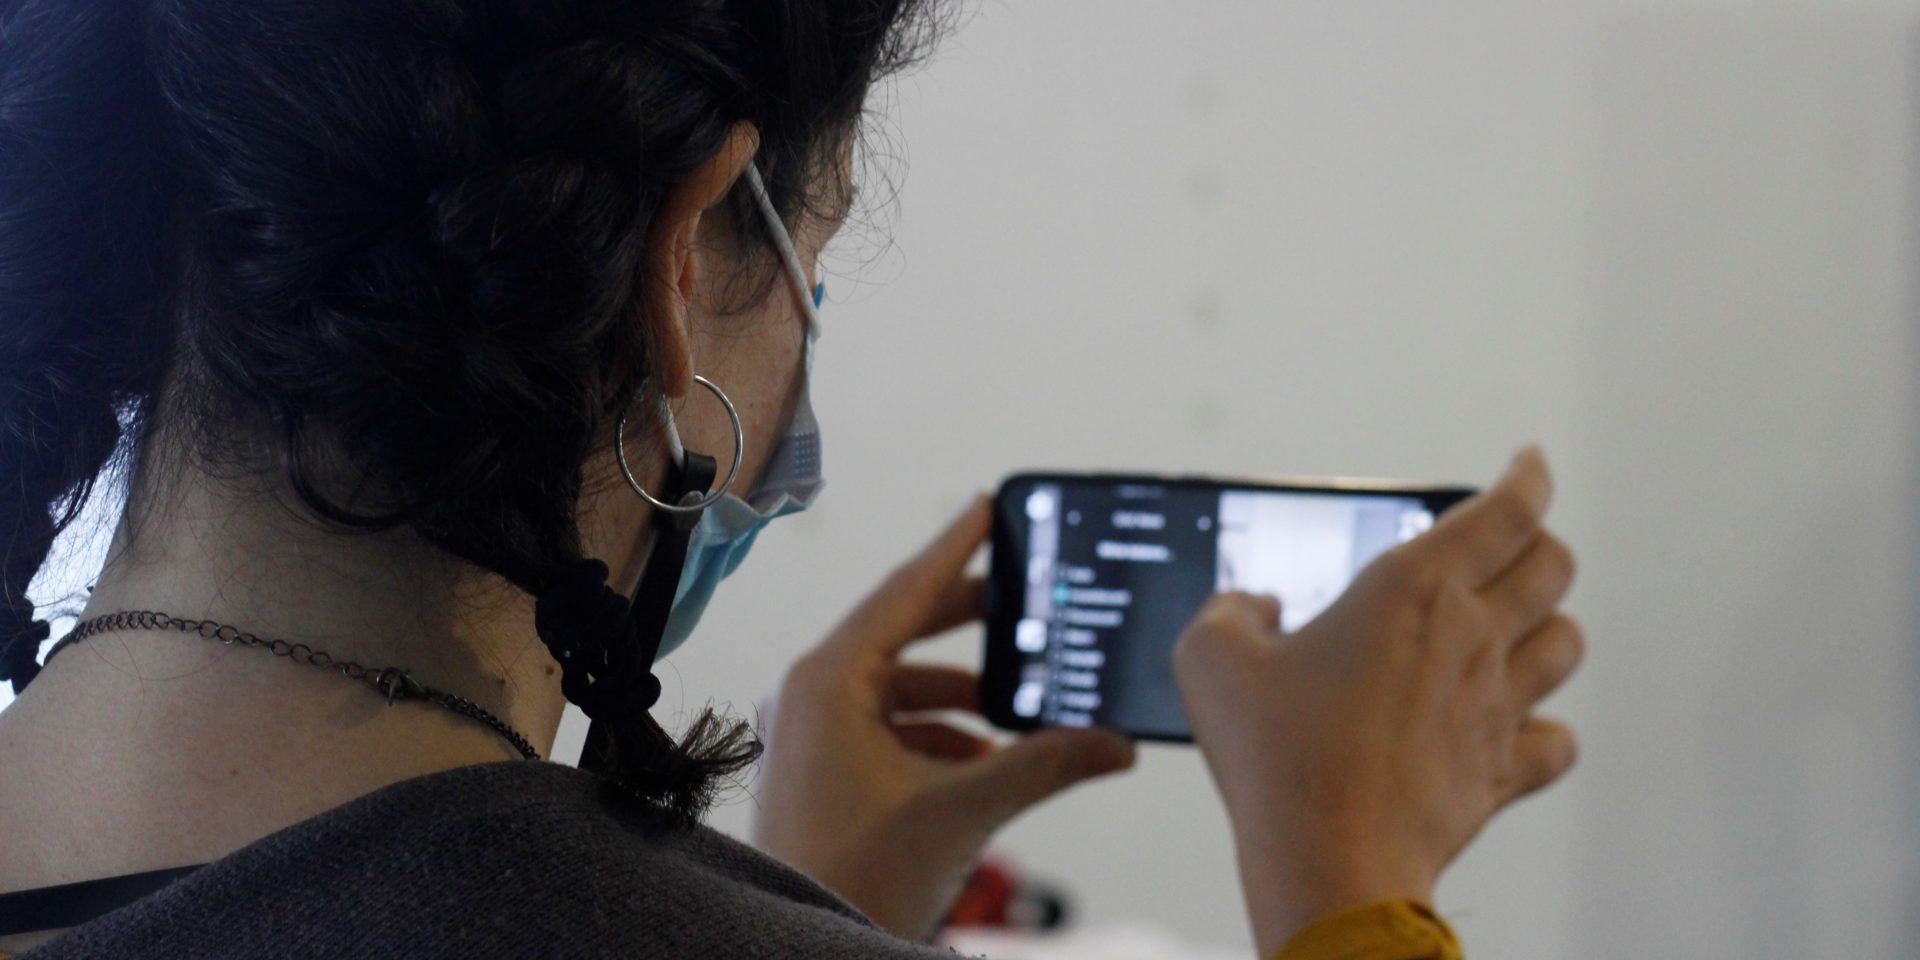 Unha participante no obradoiro de creación audiovisual practica técnicas de gravación co seu teléfono móbil. O obxectivo é a elaboración de diversos contidos dixitais